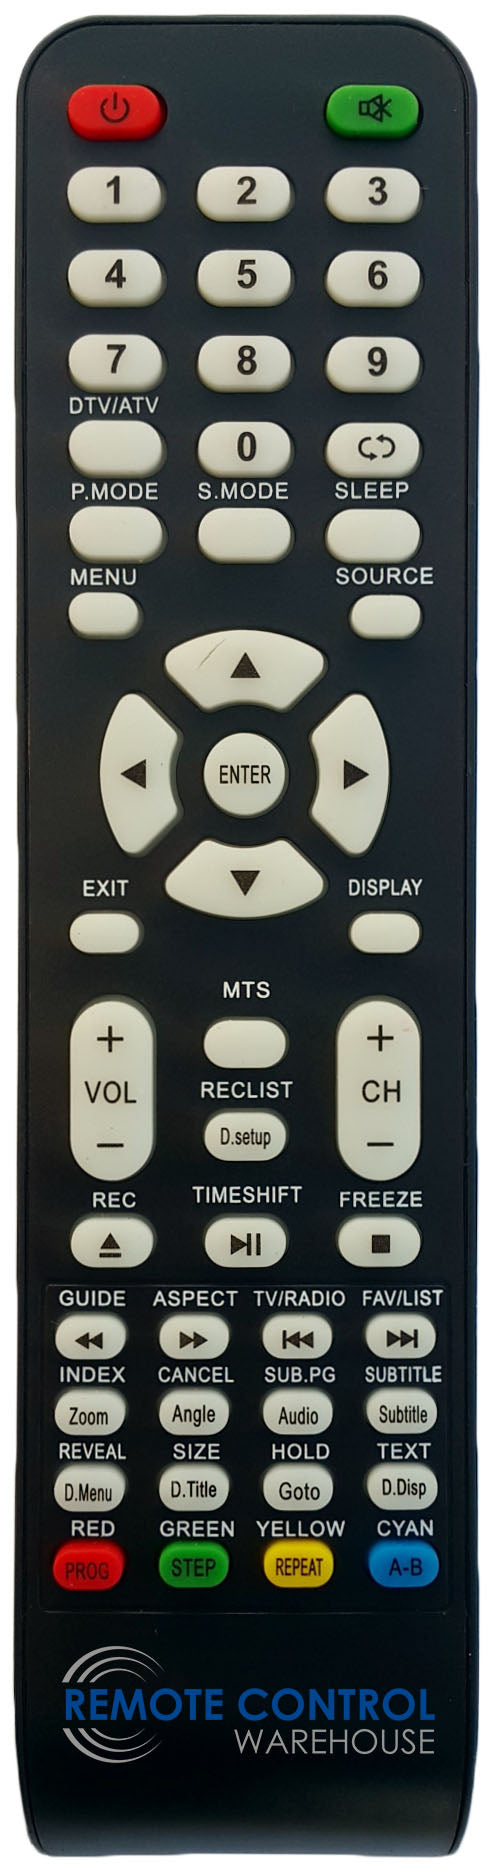 REPLACEMENT NEONIQ REMOTE CONTROL FOR NEONIQ  ELTL32EXFHDD  LCD TV - Remote Control Warehouse